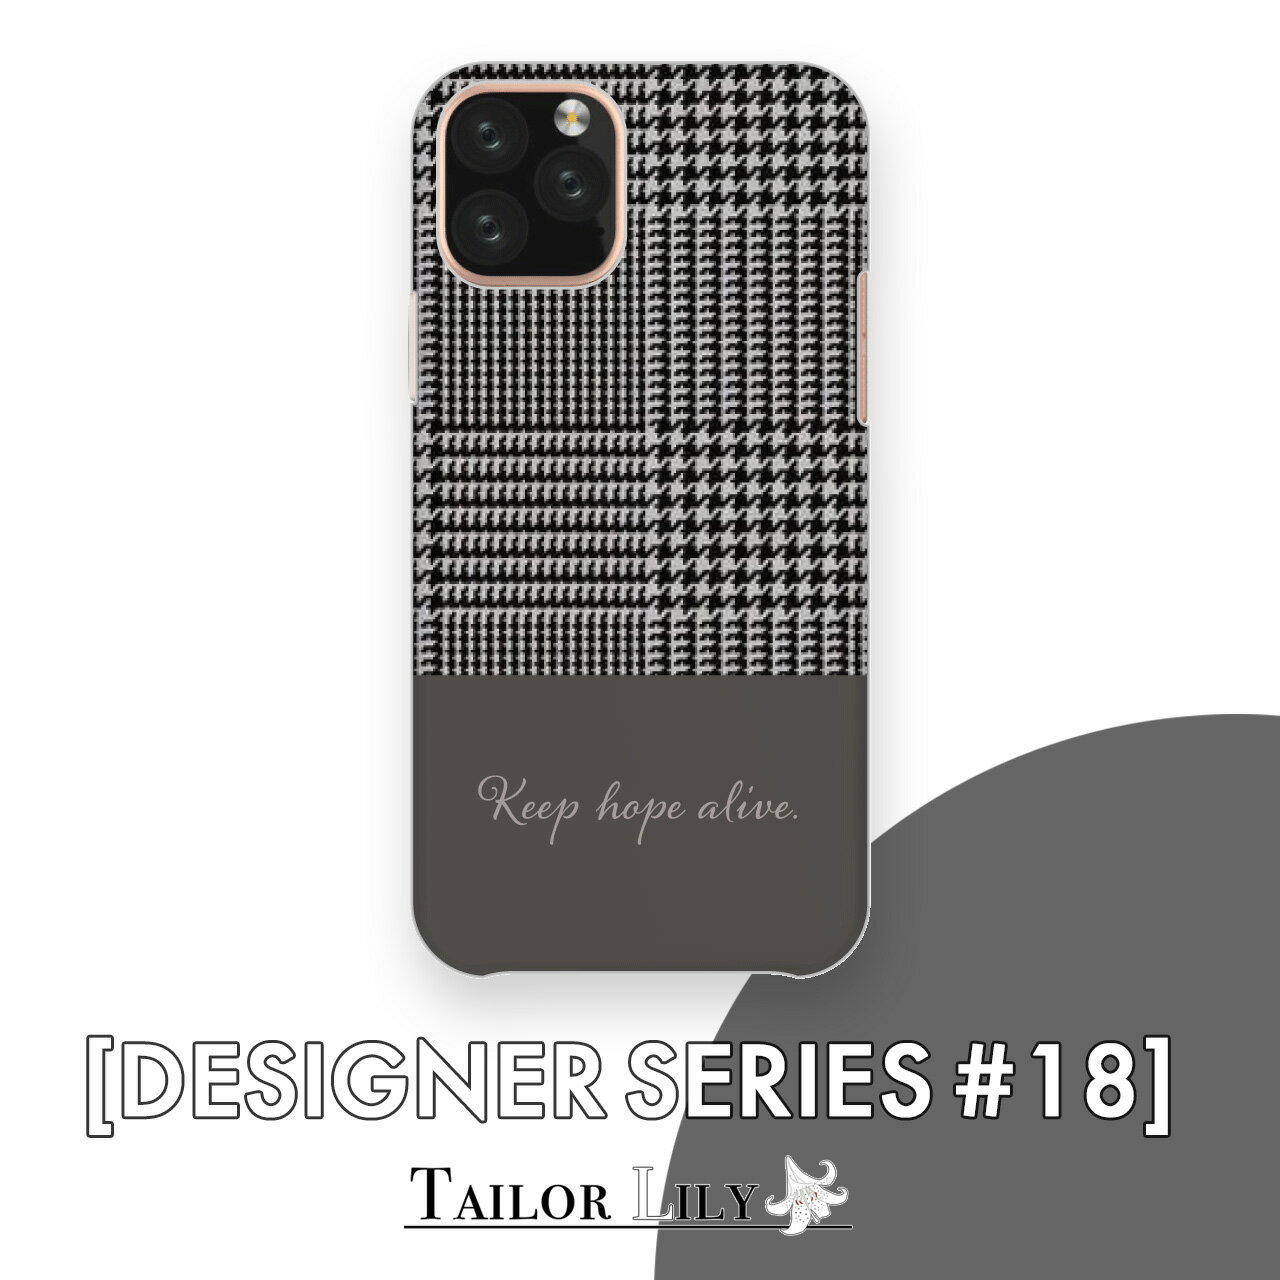 《DESIGNER SERIES #18》  全機種対応 シンプル チェック ツートーン ダーク クリア ハードケース おしゃれ 背面ケース 背面型 オリジナルデザイン Tailor Lily テイラーリリー iPhone 12 12mini 12Pro 12ProMax